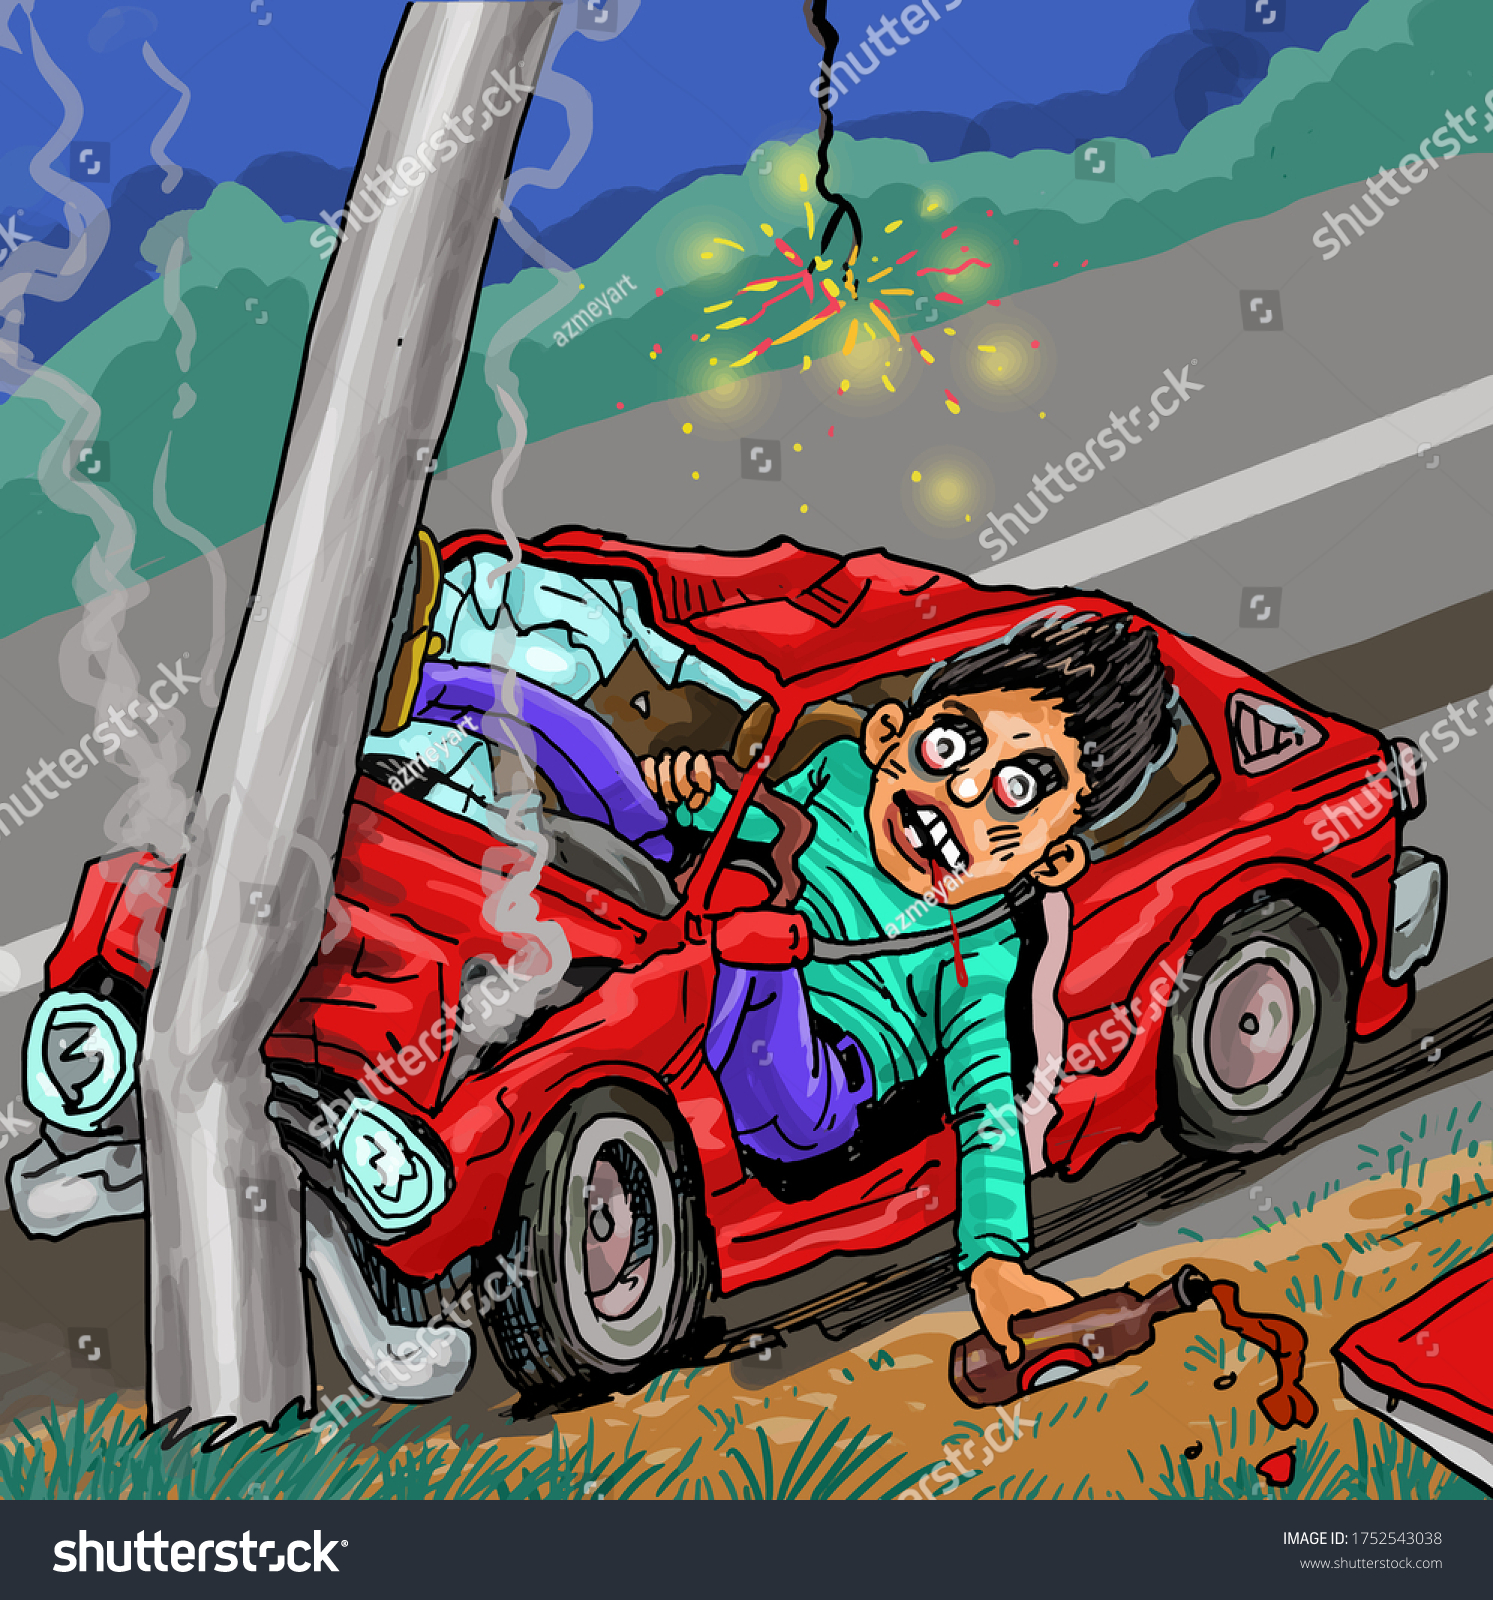 電柱にぶつかって高速道路で起きた飲酒運転事故の漫画 のベクター画像素材 ロイヤリティフリー